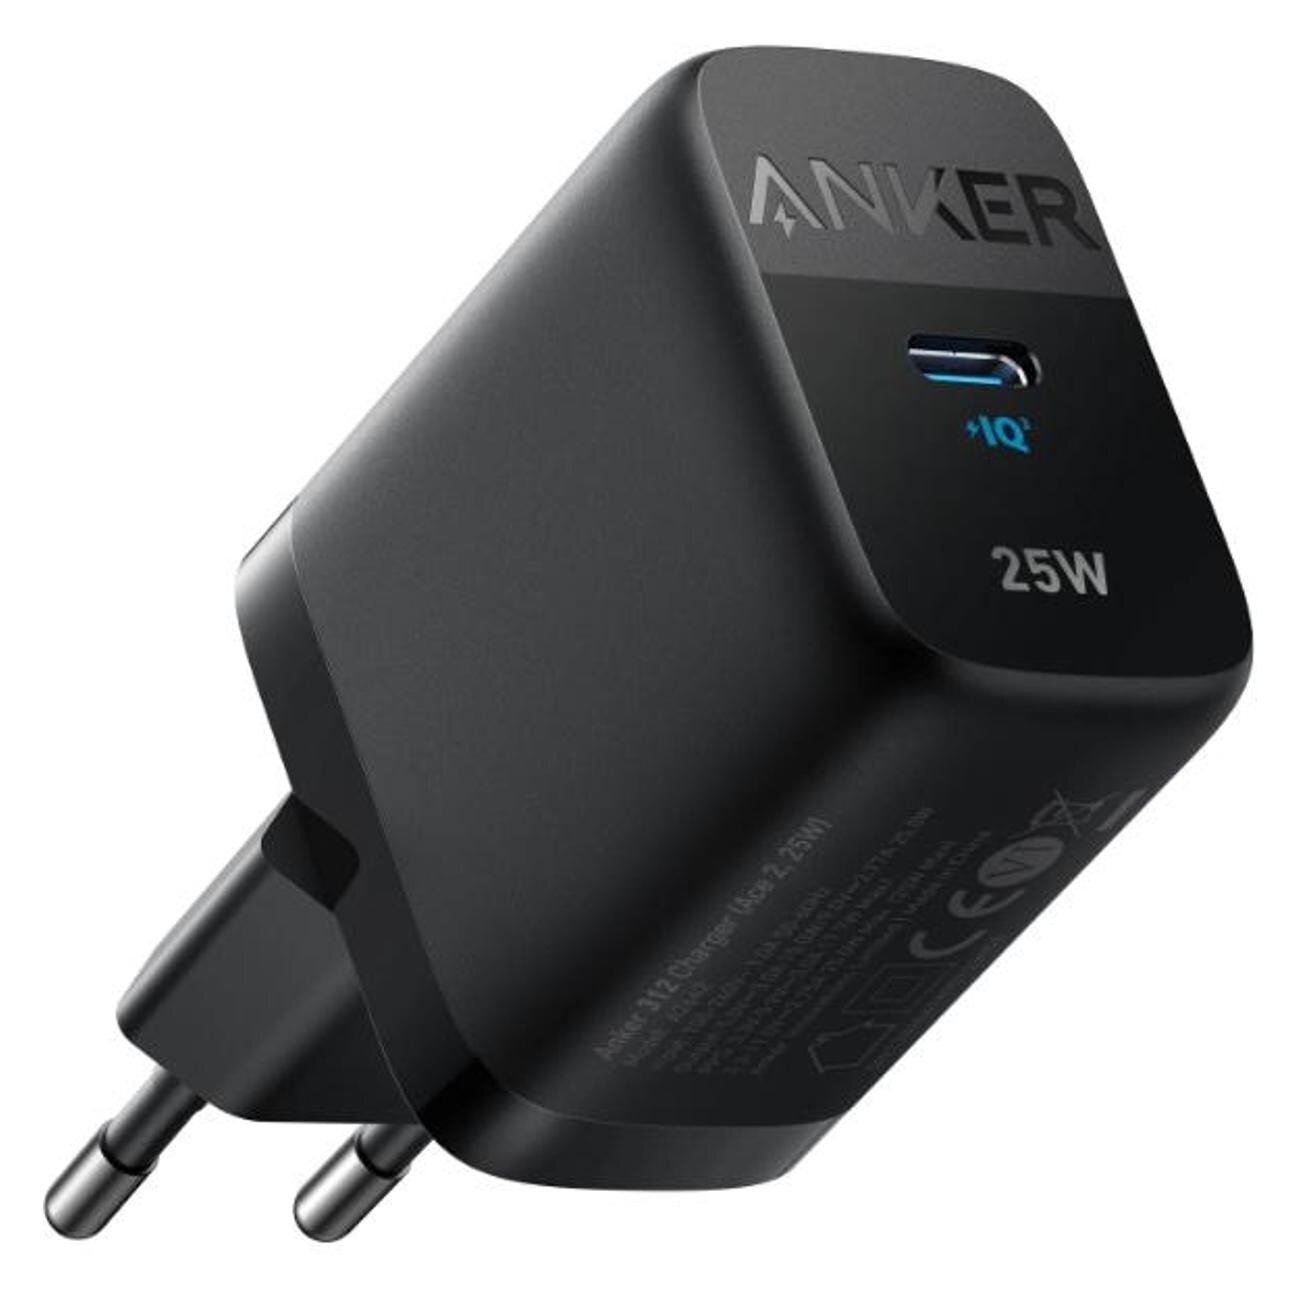 СЗУ адаптер ANKER 312 USB-C 25W (A2642), черный